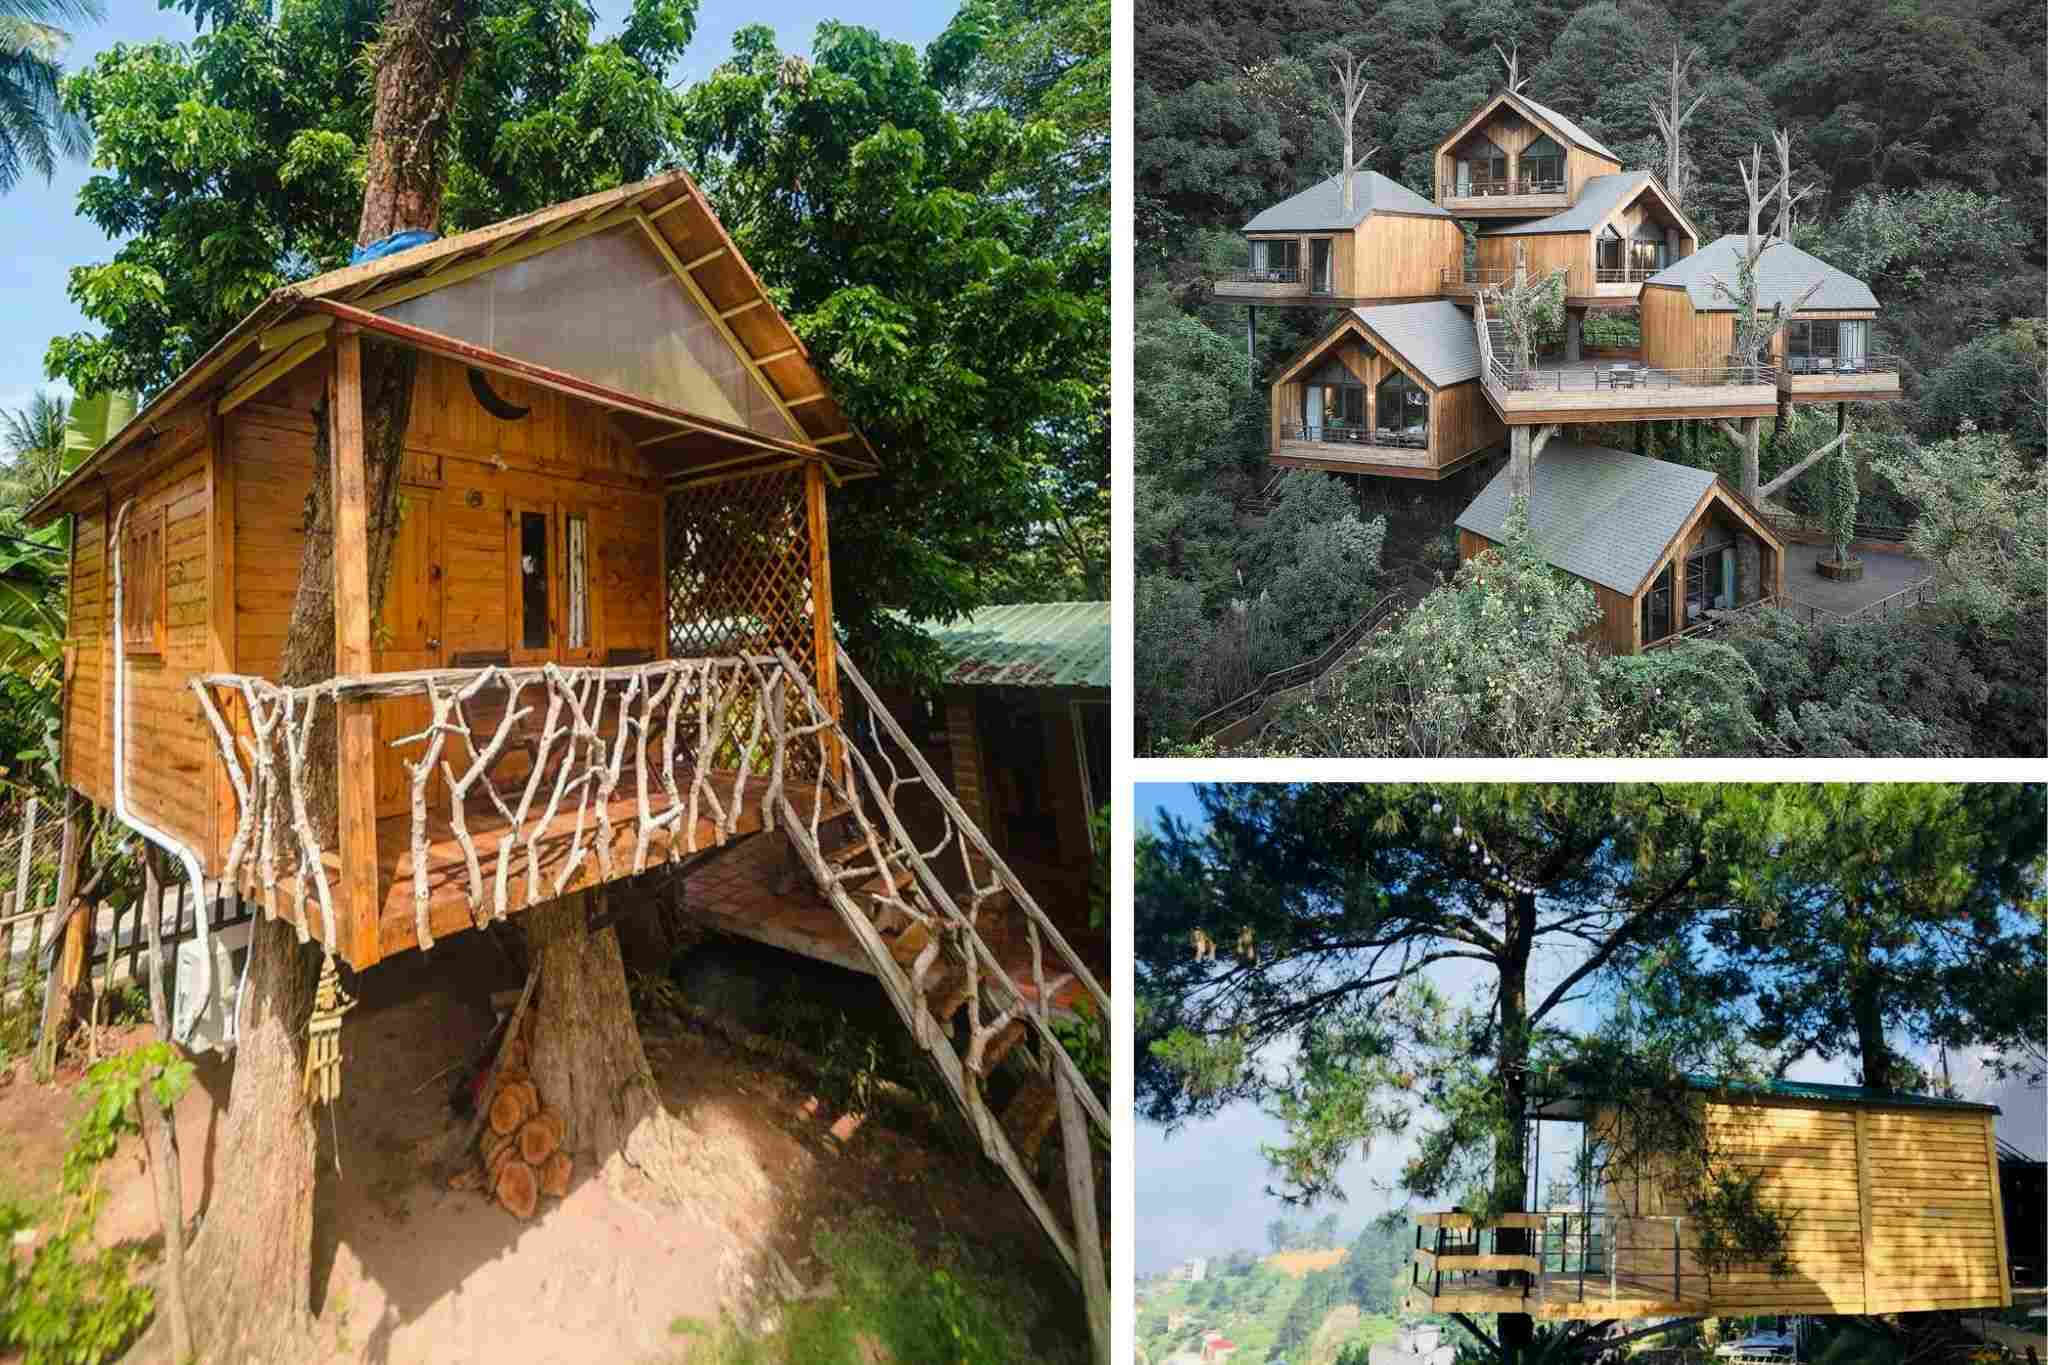 Thiết kế homestay theo kiểu nhà trên cây